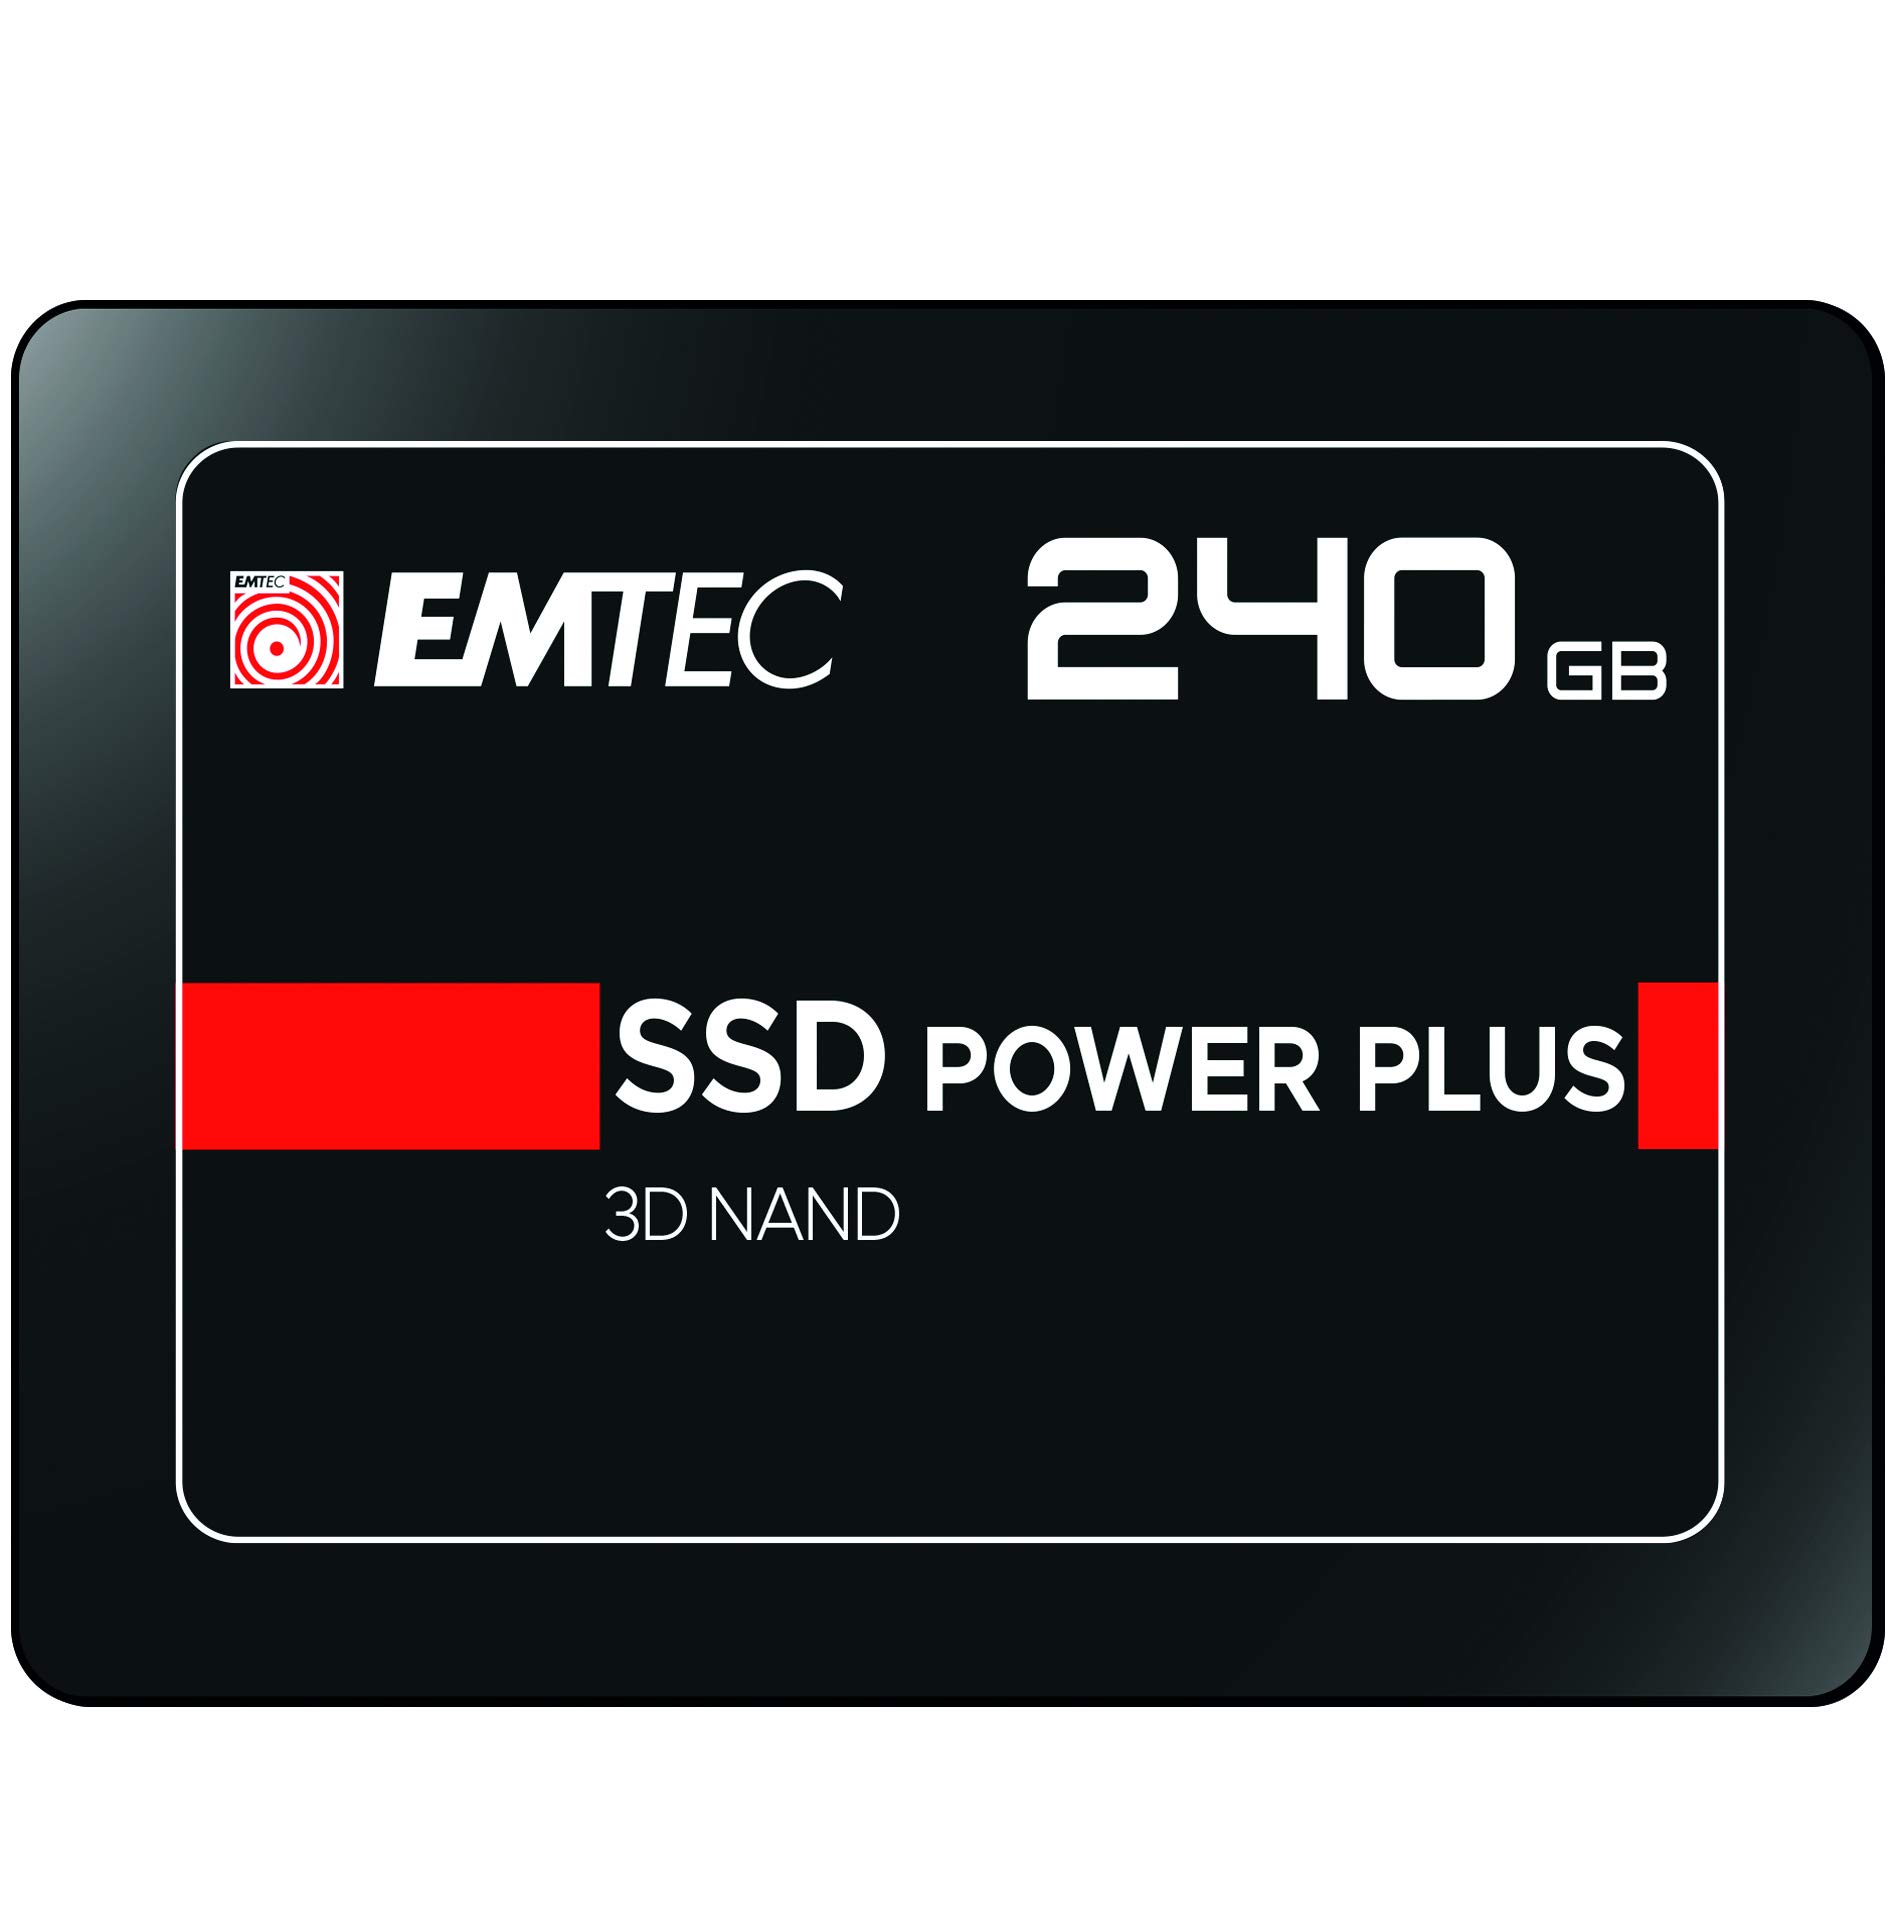 EMTEC 240GB SSD Sata III